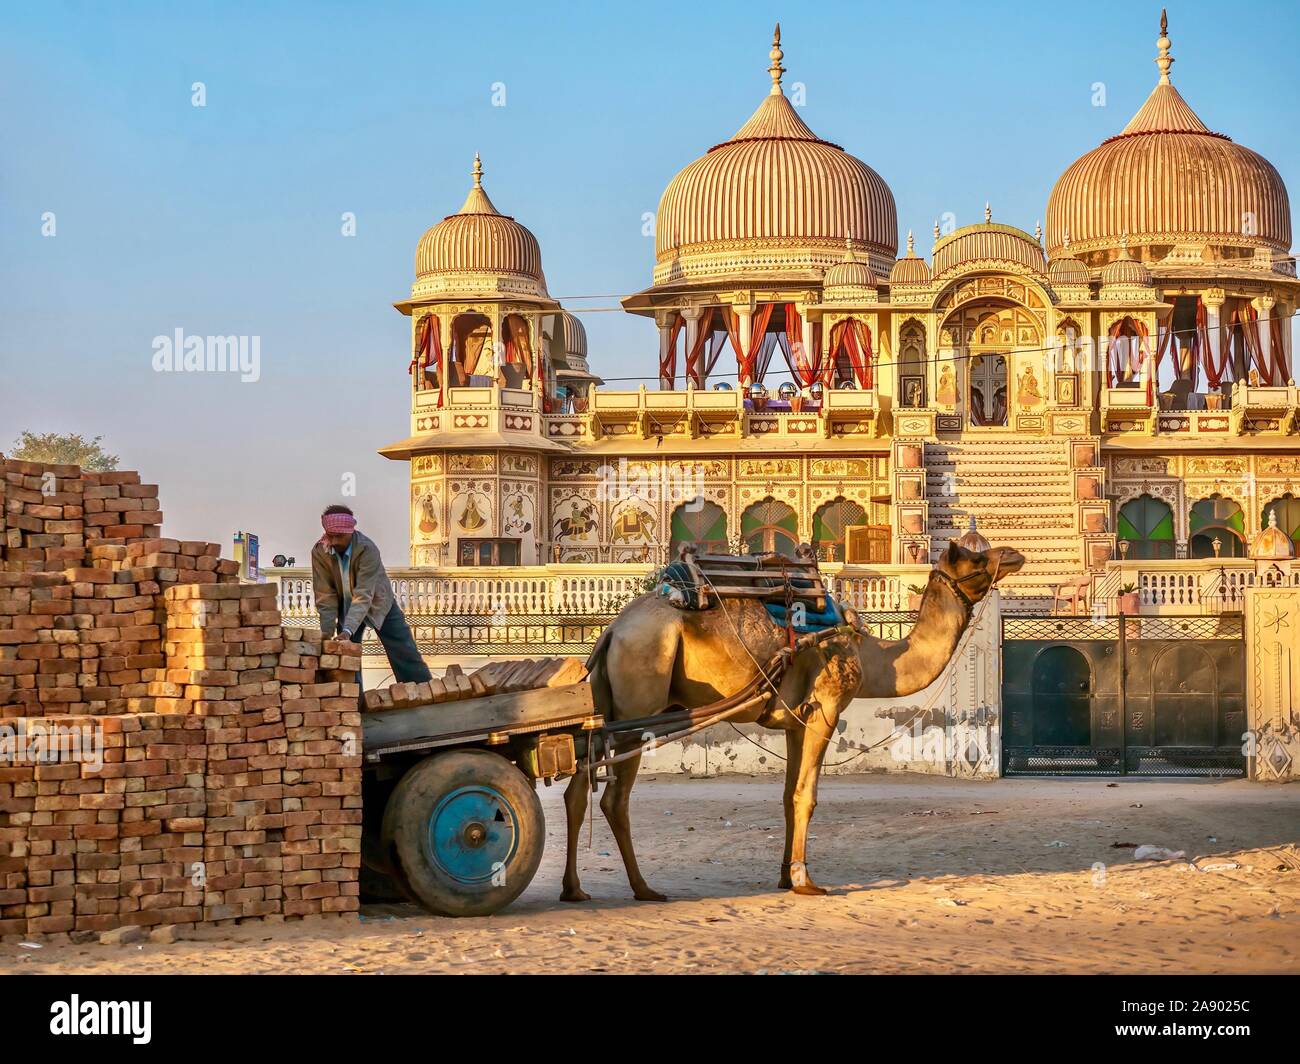 Ziegel von einem Delivery Man unbelastet von einer Karre zu einem Kamel vor Ein wunderschön restauriertes haveli Palast genutzt. Mandawa, Rajasthan, Indien. Stockfoto